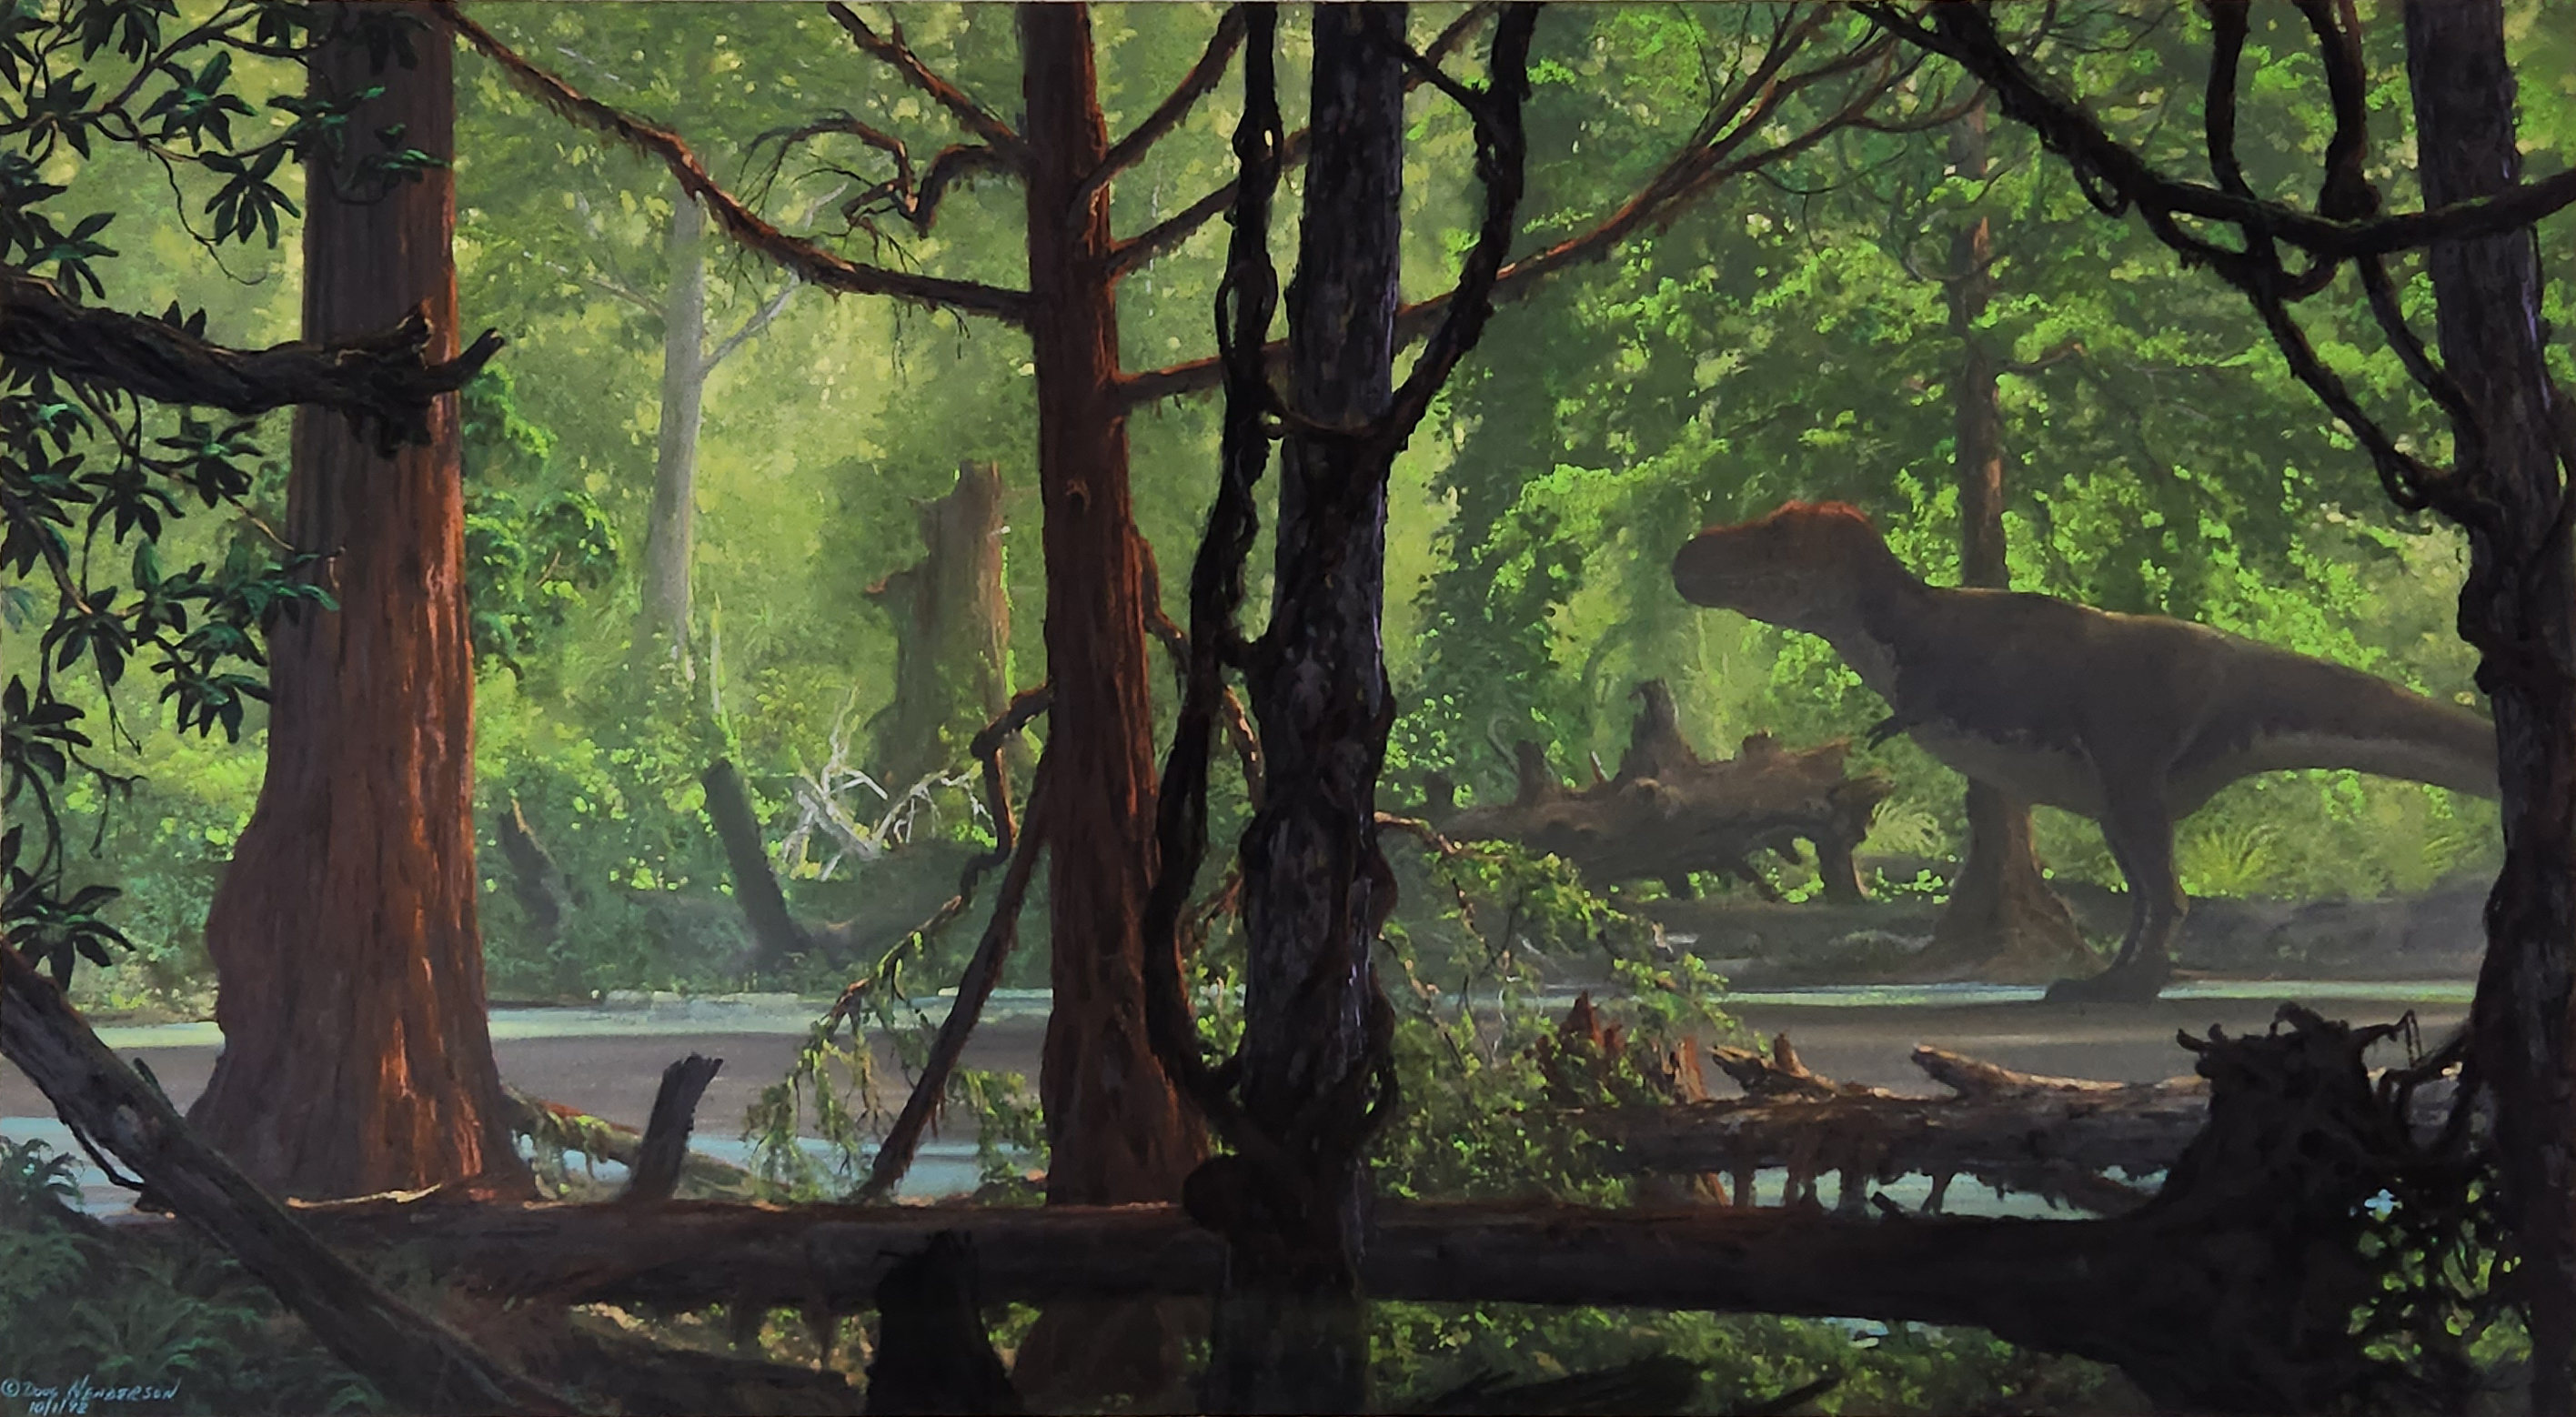 ダグラス・ヘンダーソン 「ティラノサウルス」 1992年 パステル・紙 36.8 × 68.6 ㎝ インディアナポリス子供博物館（ランツェンドルフ・コレクション）